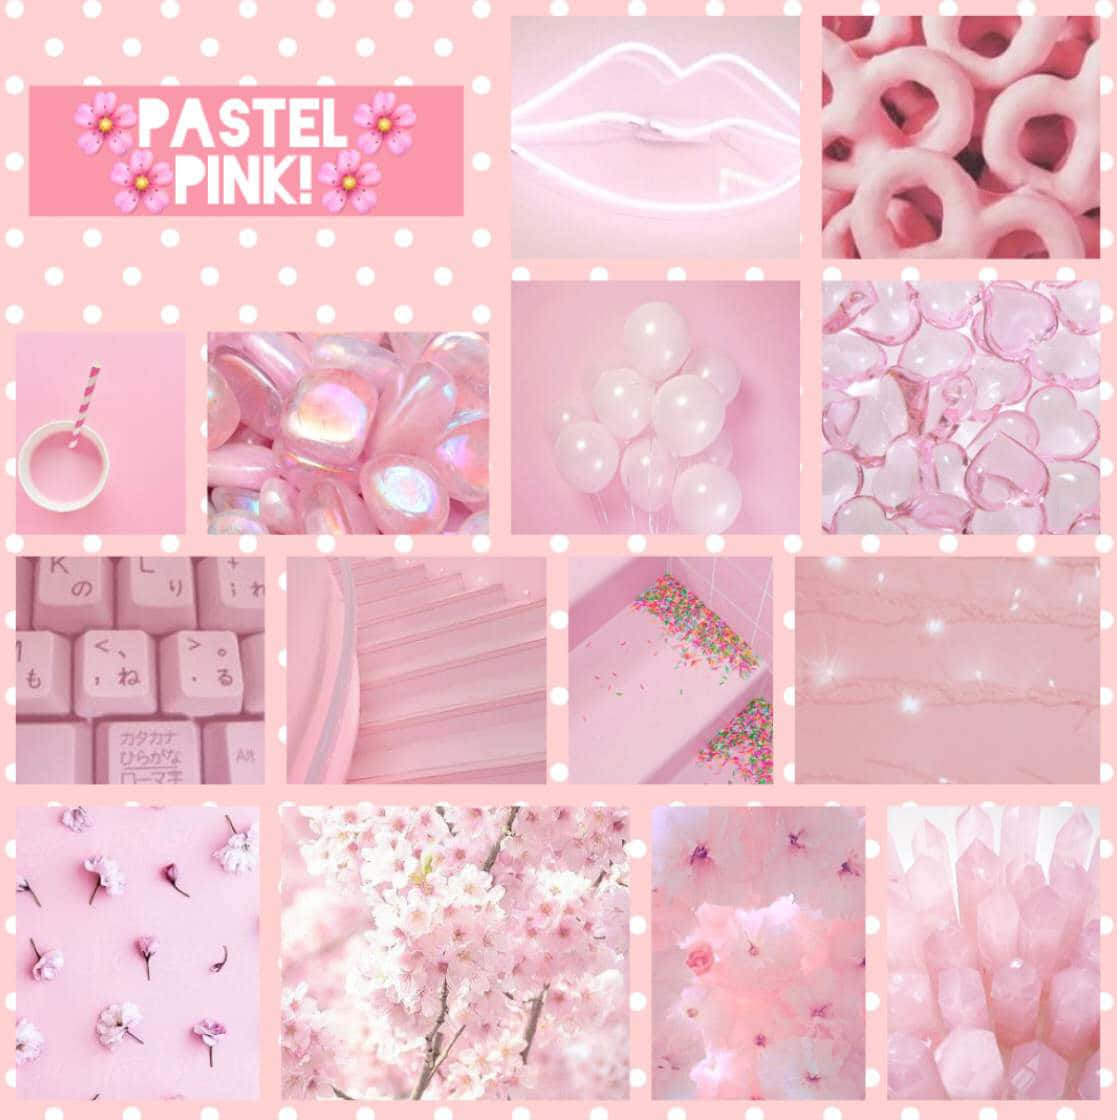 Gehensie Für Einen Pastellrosa Ästhetischen Look Mit Diesem Pink-weißen Hintergrundbild!